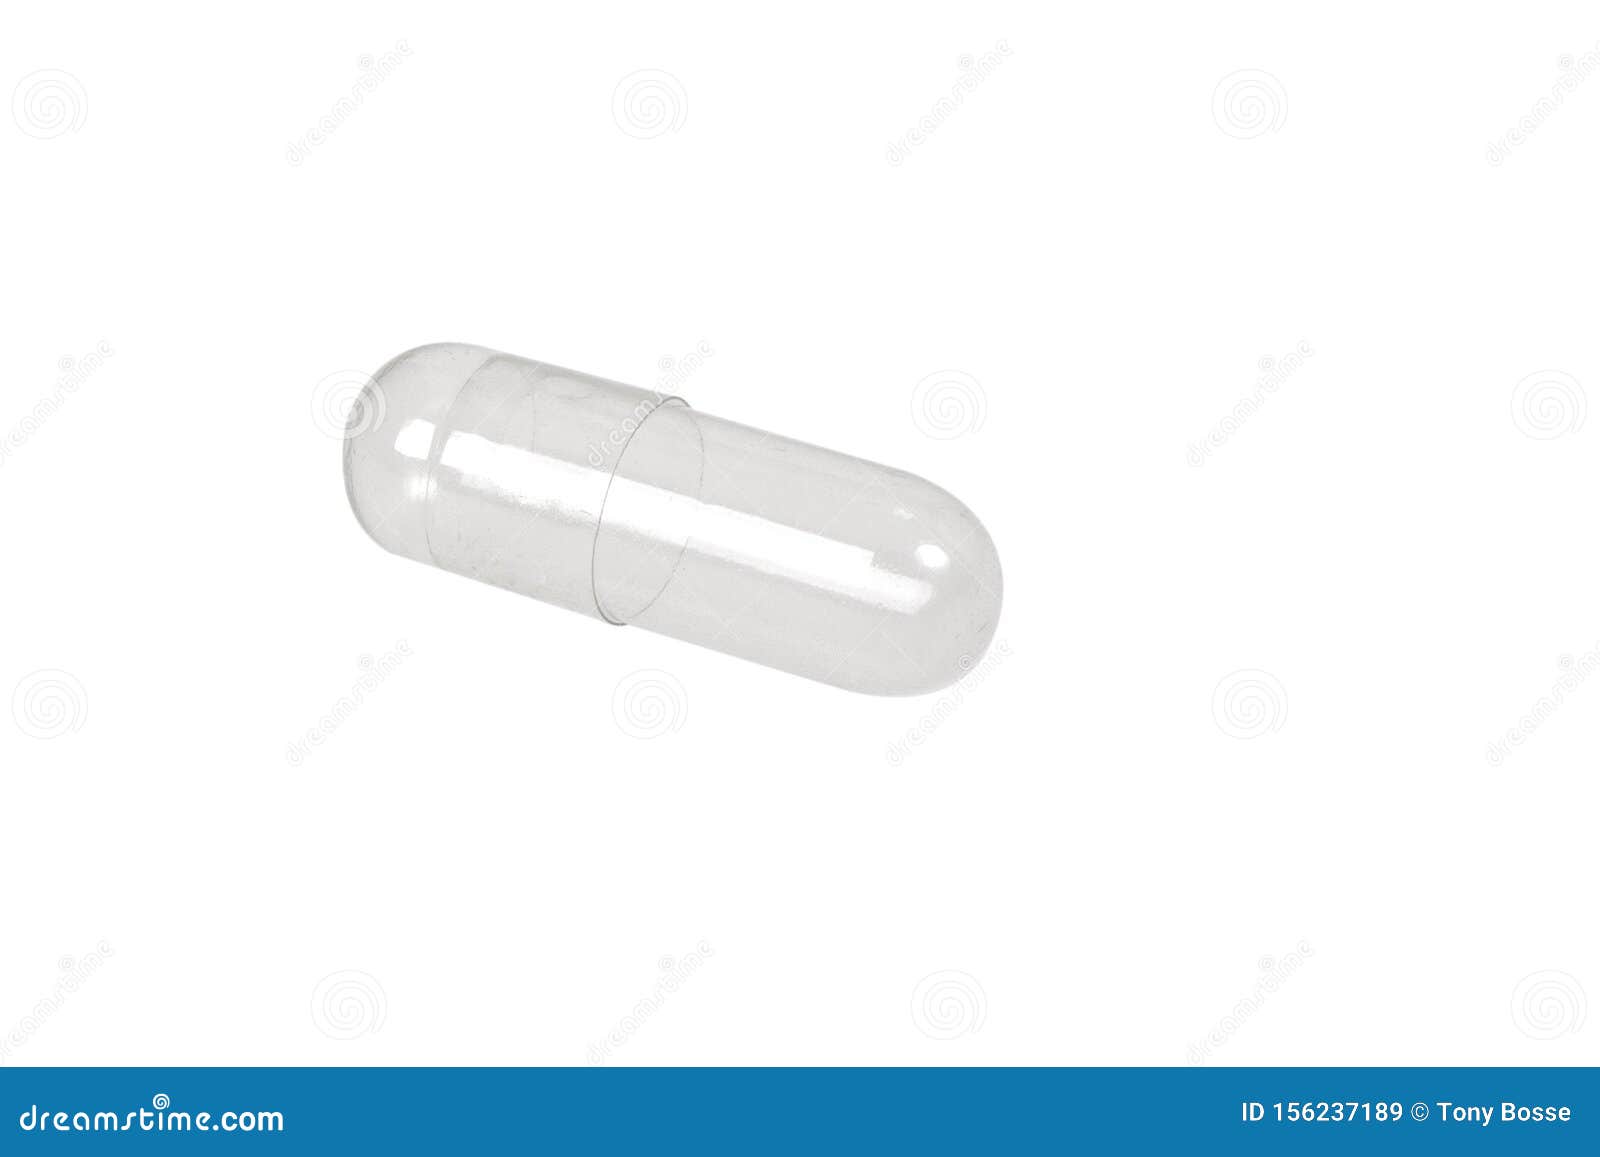 empty transparent pill capsule